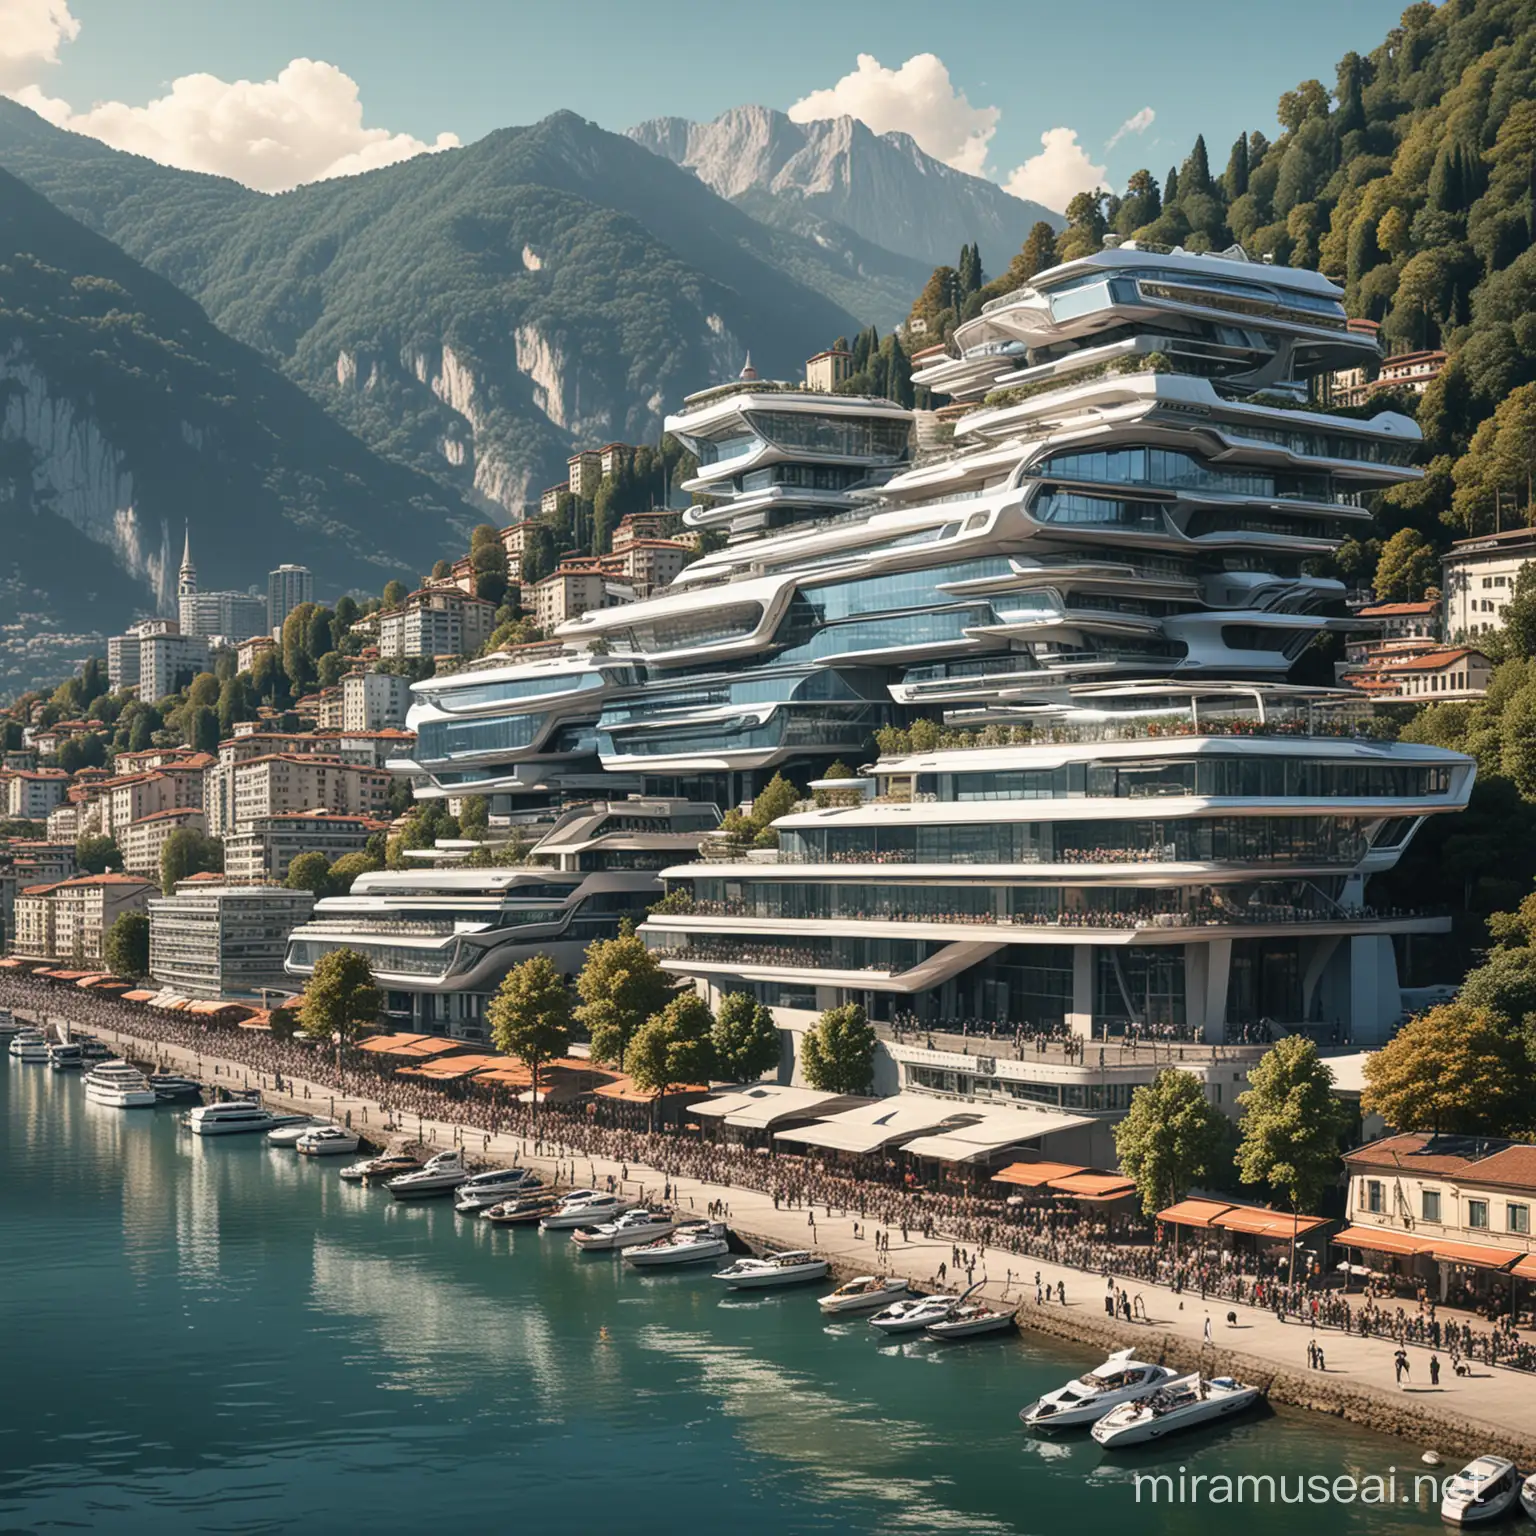 Futuristic Lugano 2124 SciFi Cityscape with HiTech Architecture